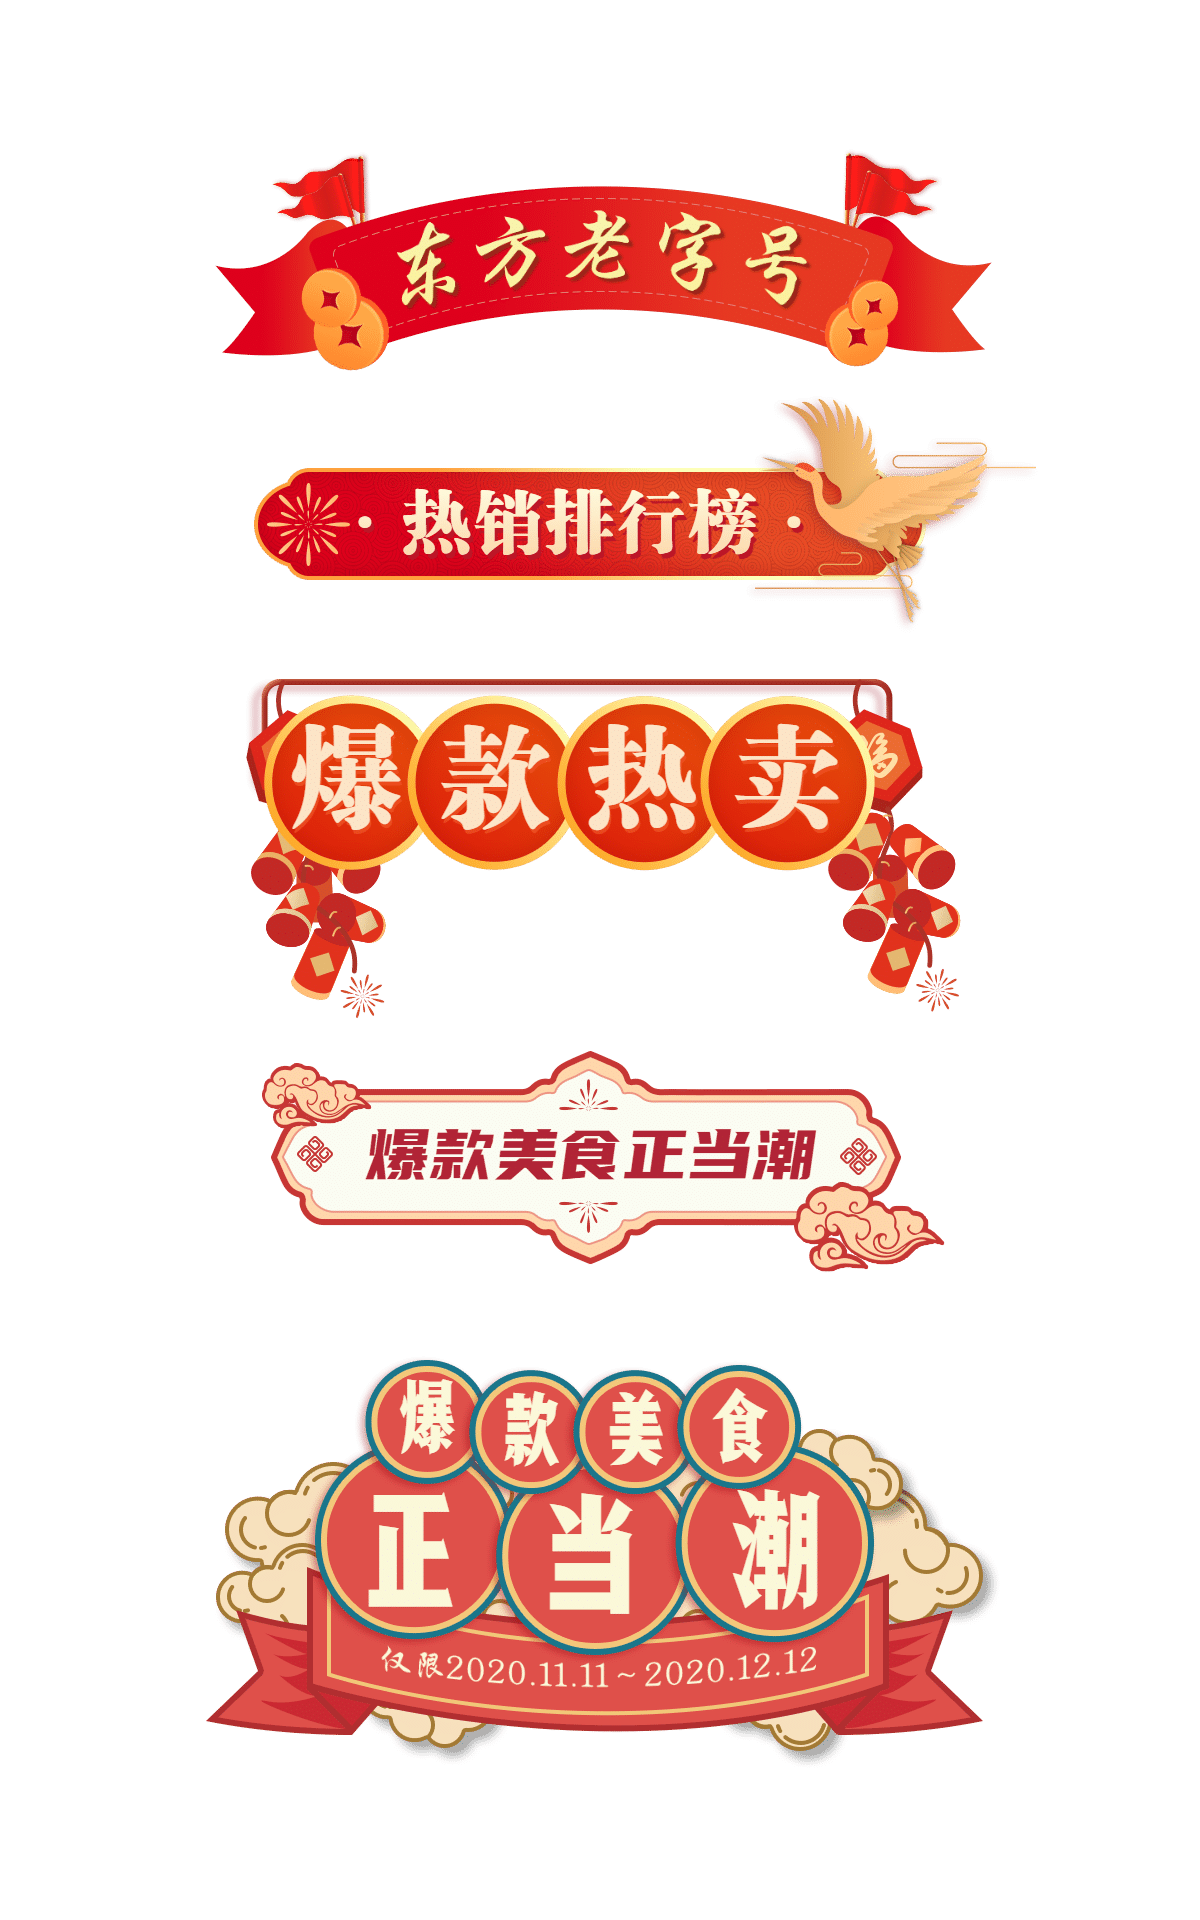 中国风导航栏元素组合海报预览效果